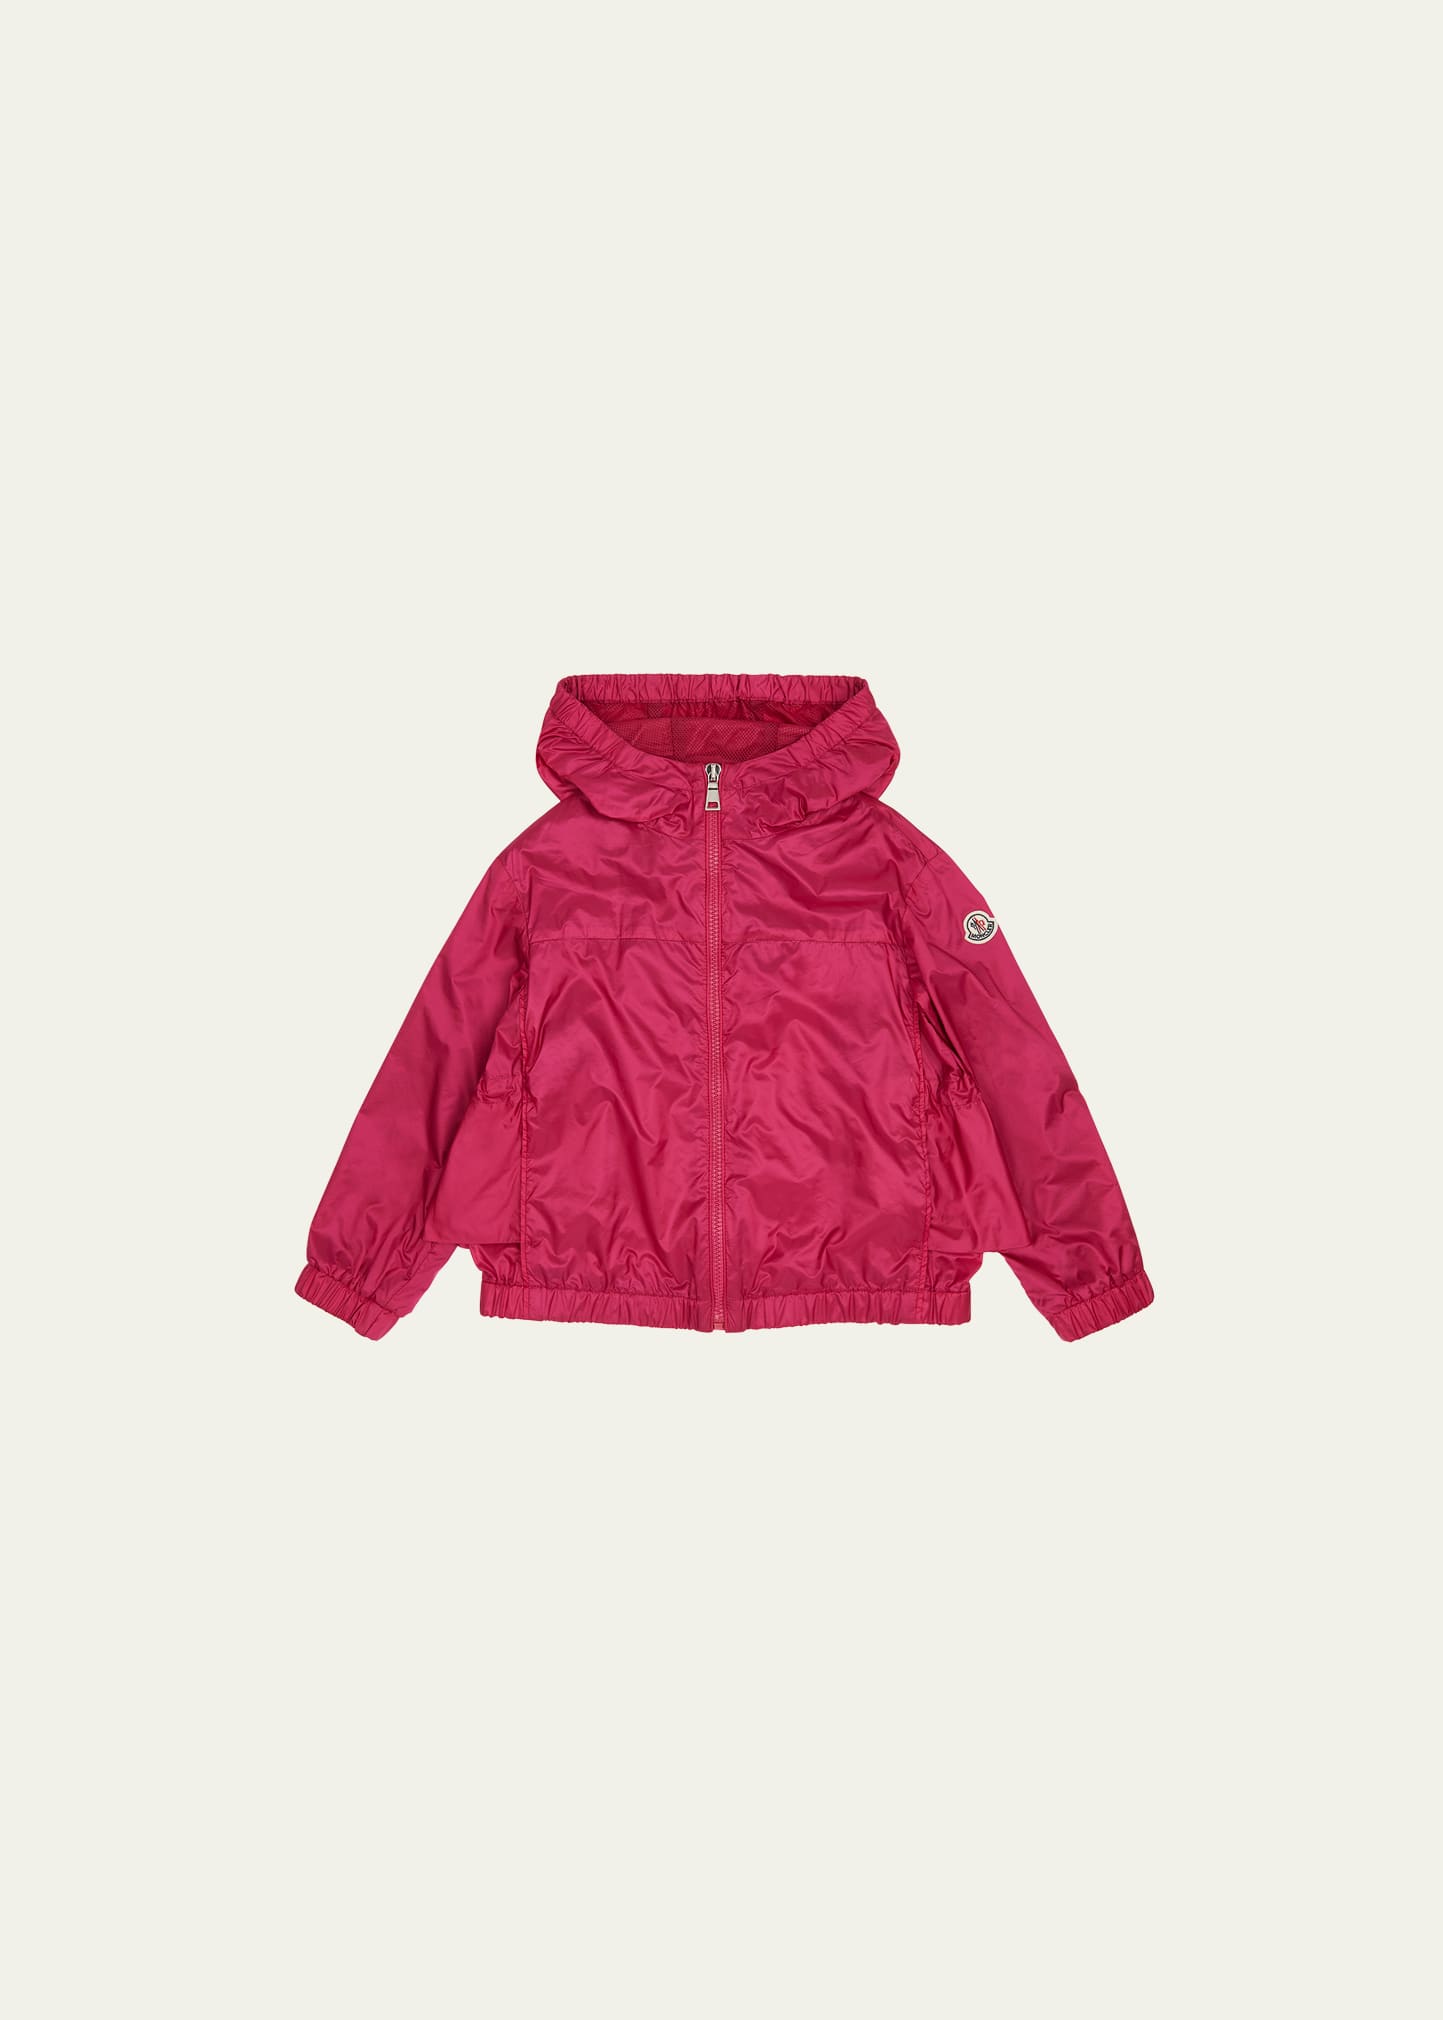 Moncler Kids' Girl's Owara Hooded Rain Jacket In Dark Pink